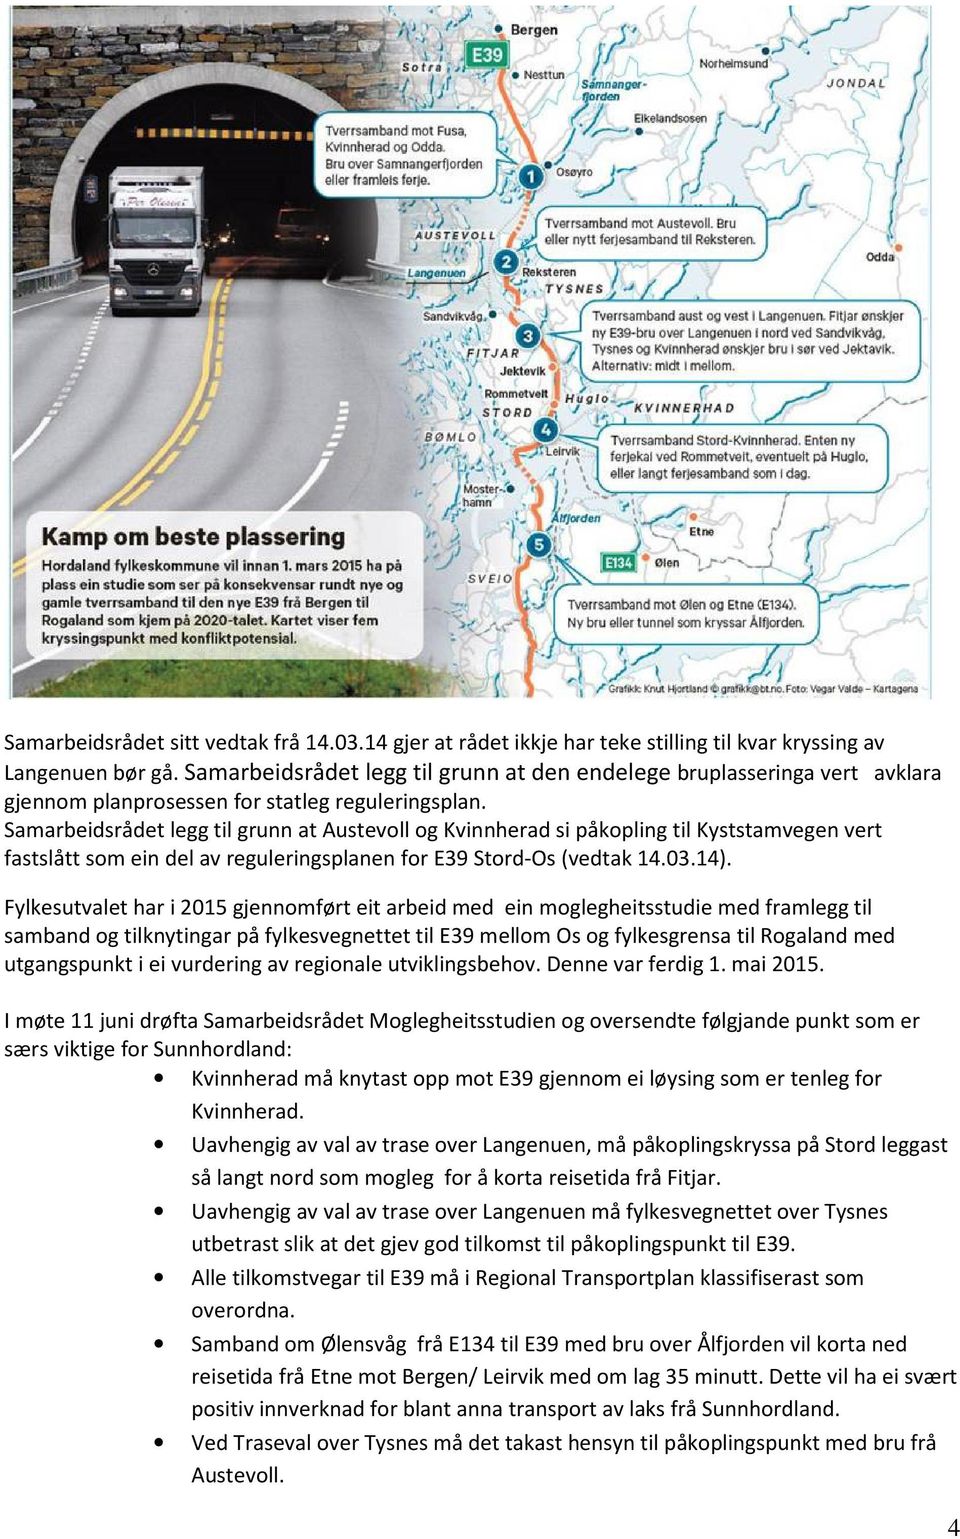 Samarbeidsrådet legg til grunn at Austevoll og Kvinnherad si påkopling til Kyststamvegen vert fastslått som ein del av reguleringsplanen for E39 Stord-Os (vedtak 14.03.14).